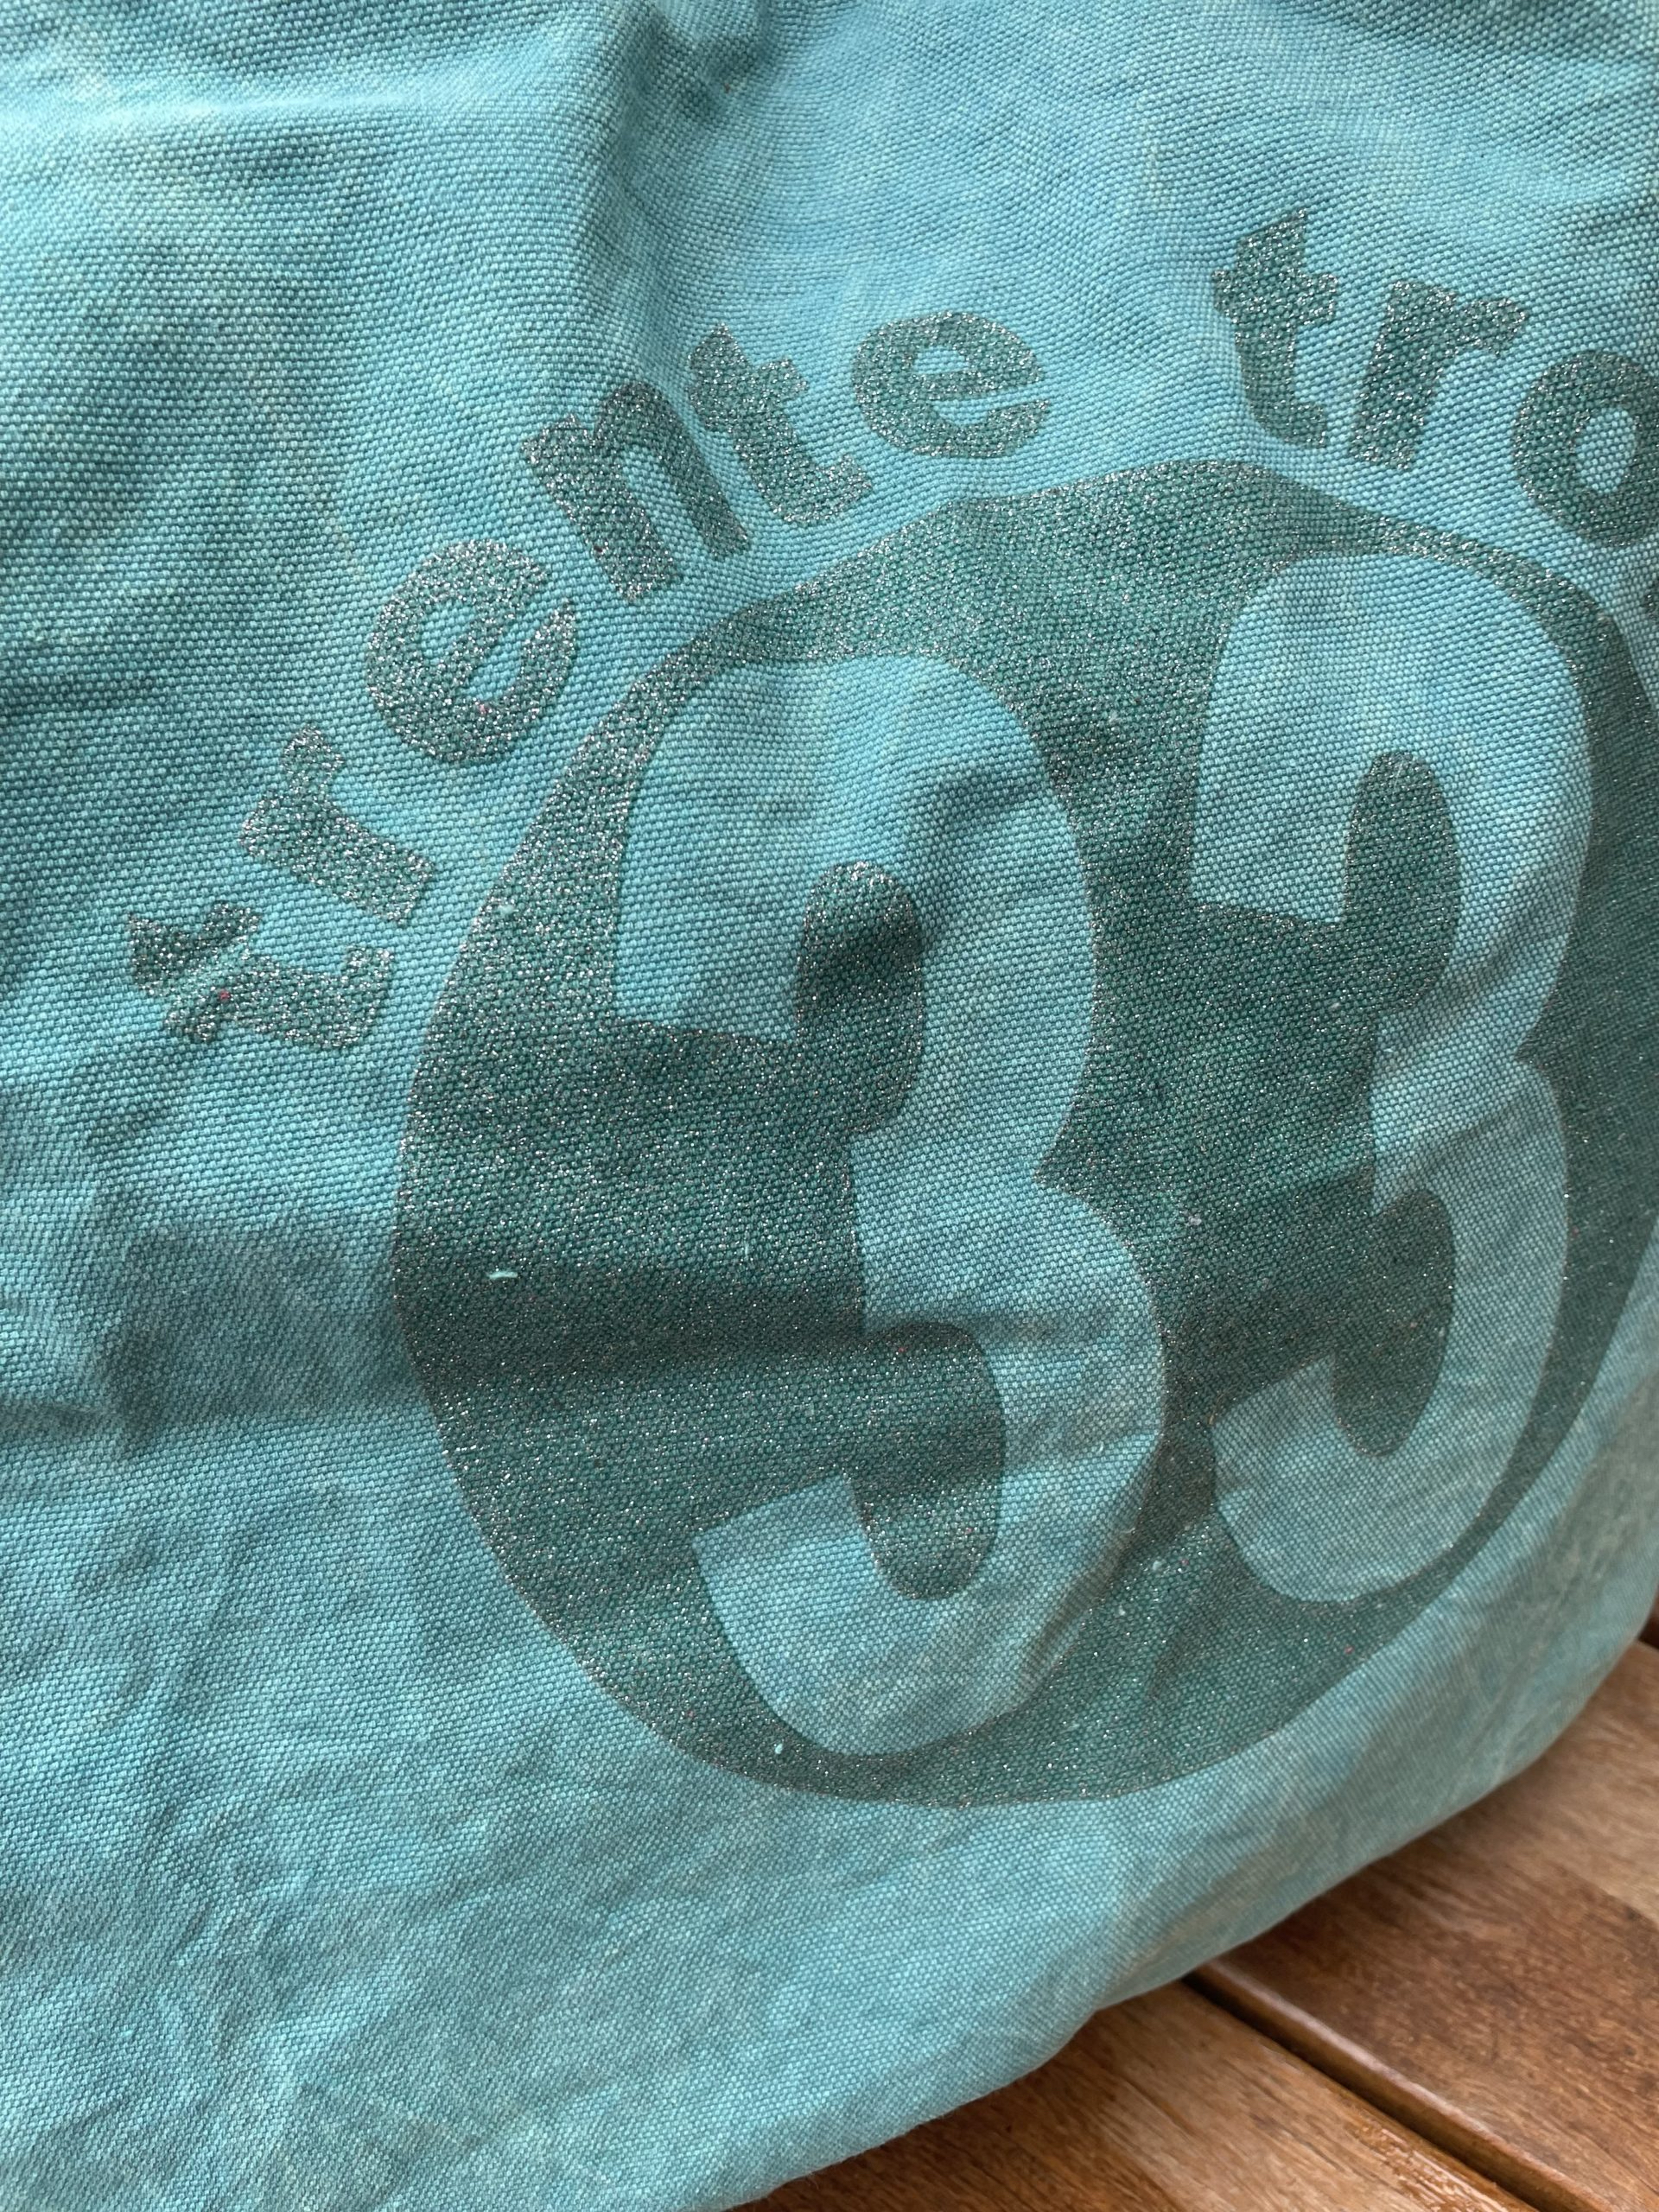 Un maxi bag turquoise de la marque régionale 33.